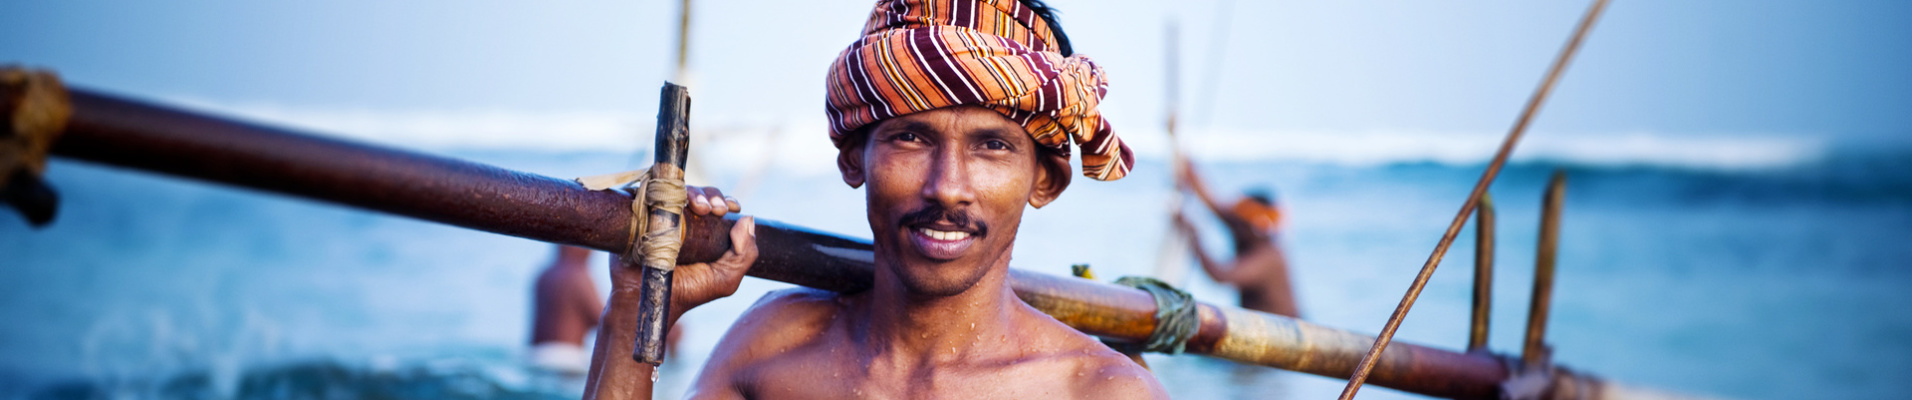 pecheur traditionnel sri lanka